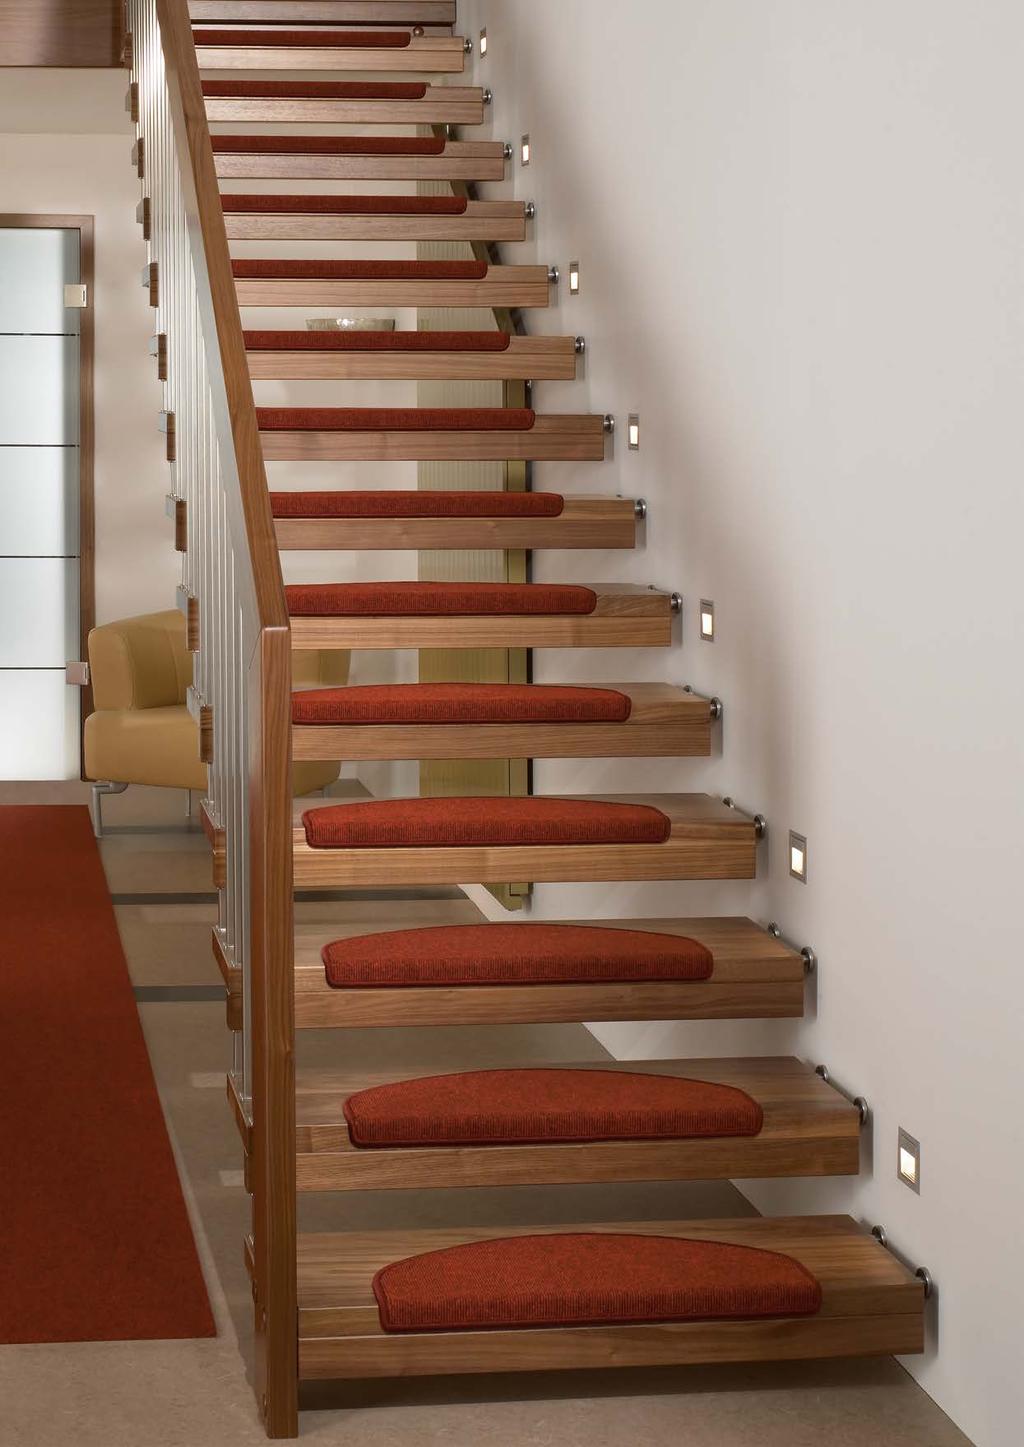 Stufenmatten bieten Komfort und erhöhen die Trittsicherheit auf der Treppe.